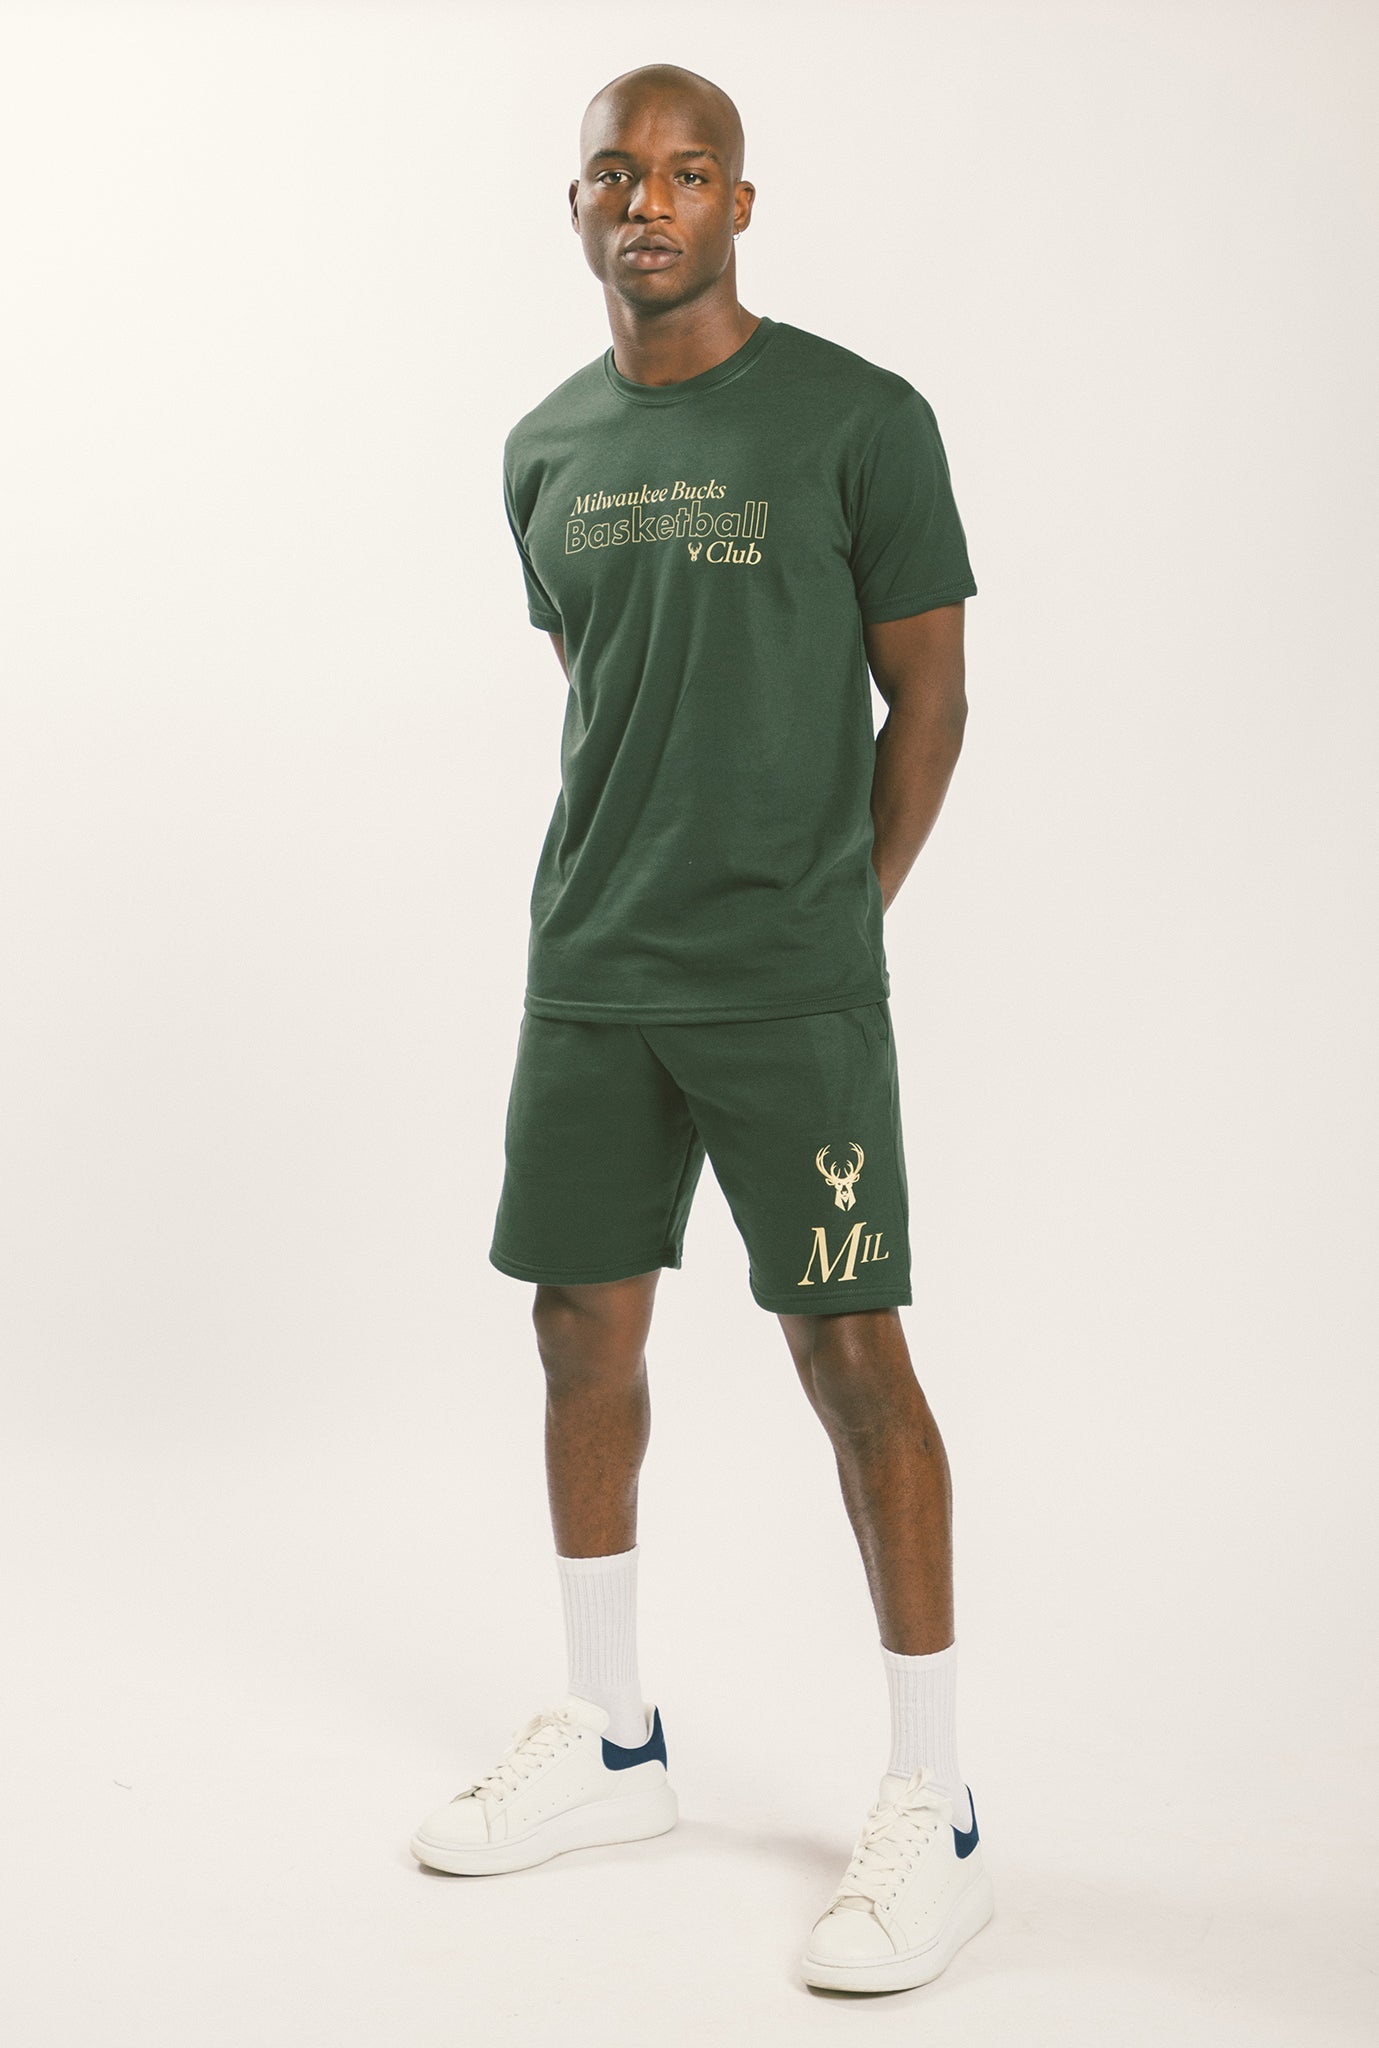 Milwaukee Bucks Basketball Premium T-Shirt - Forest Green